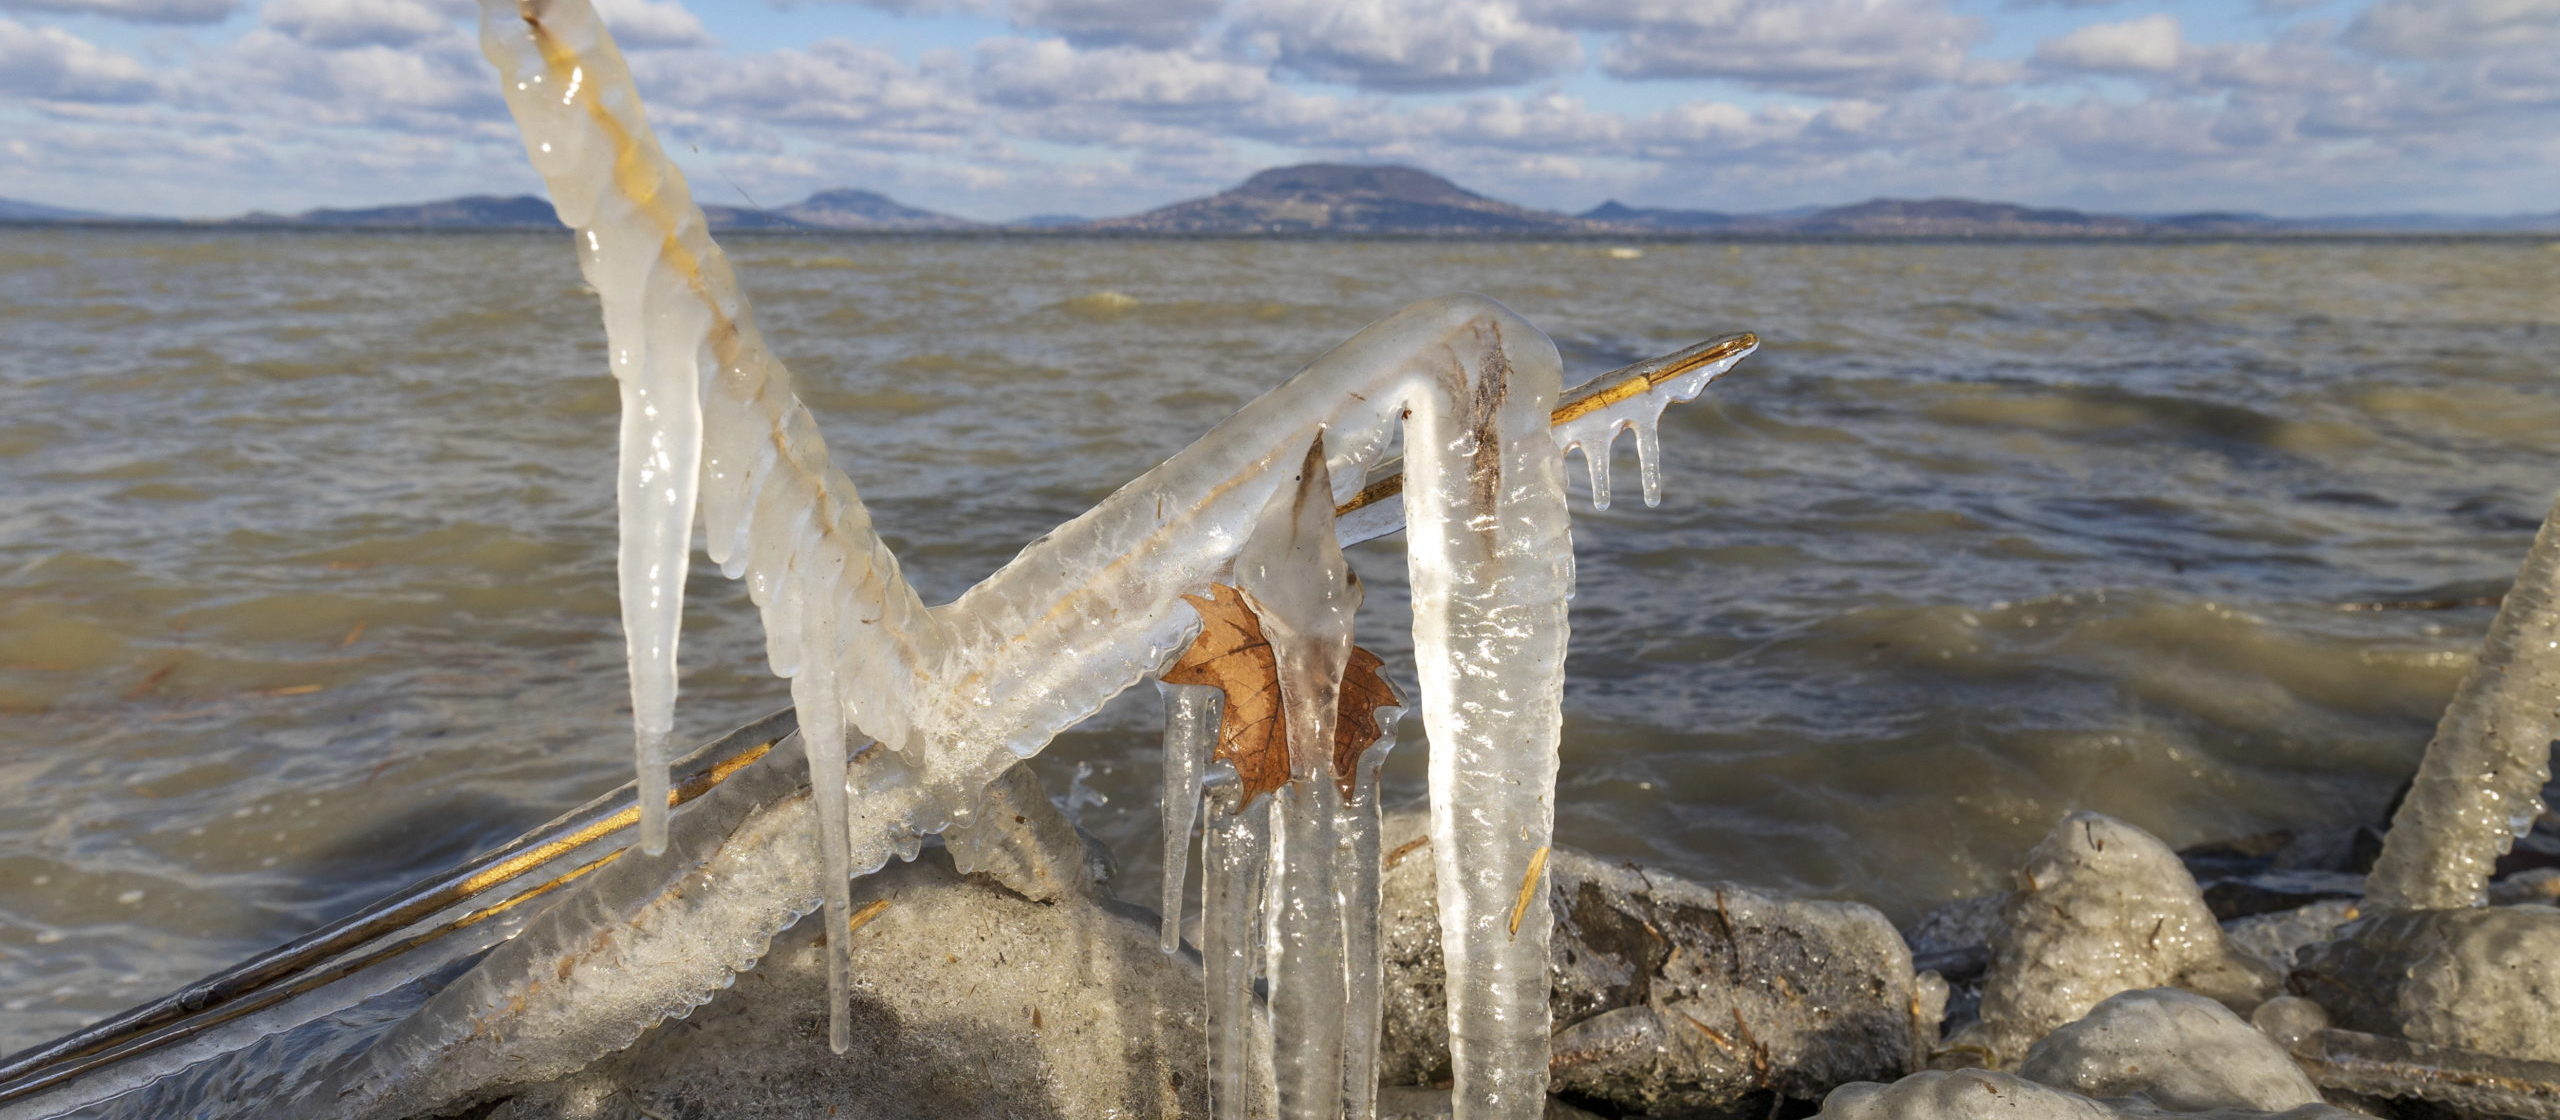 Gigantikus jégcsapok a Balaton partján – GALÉRIA